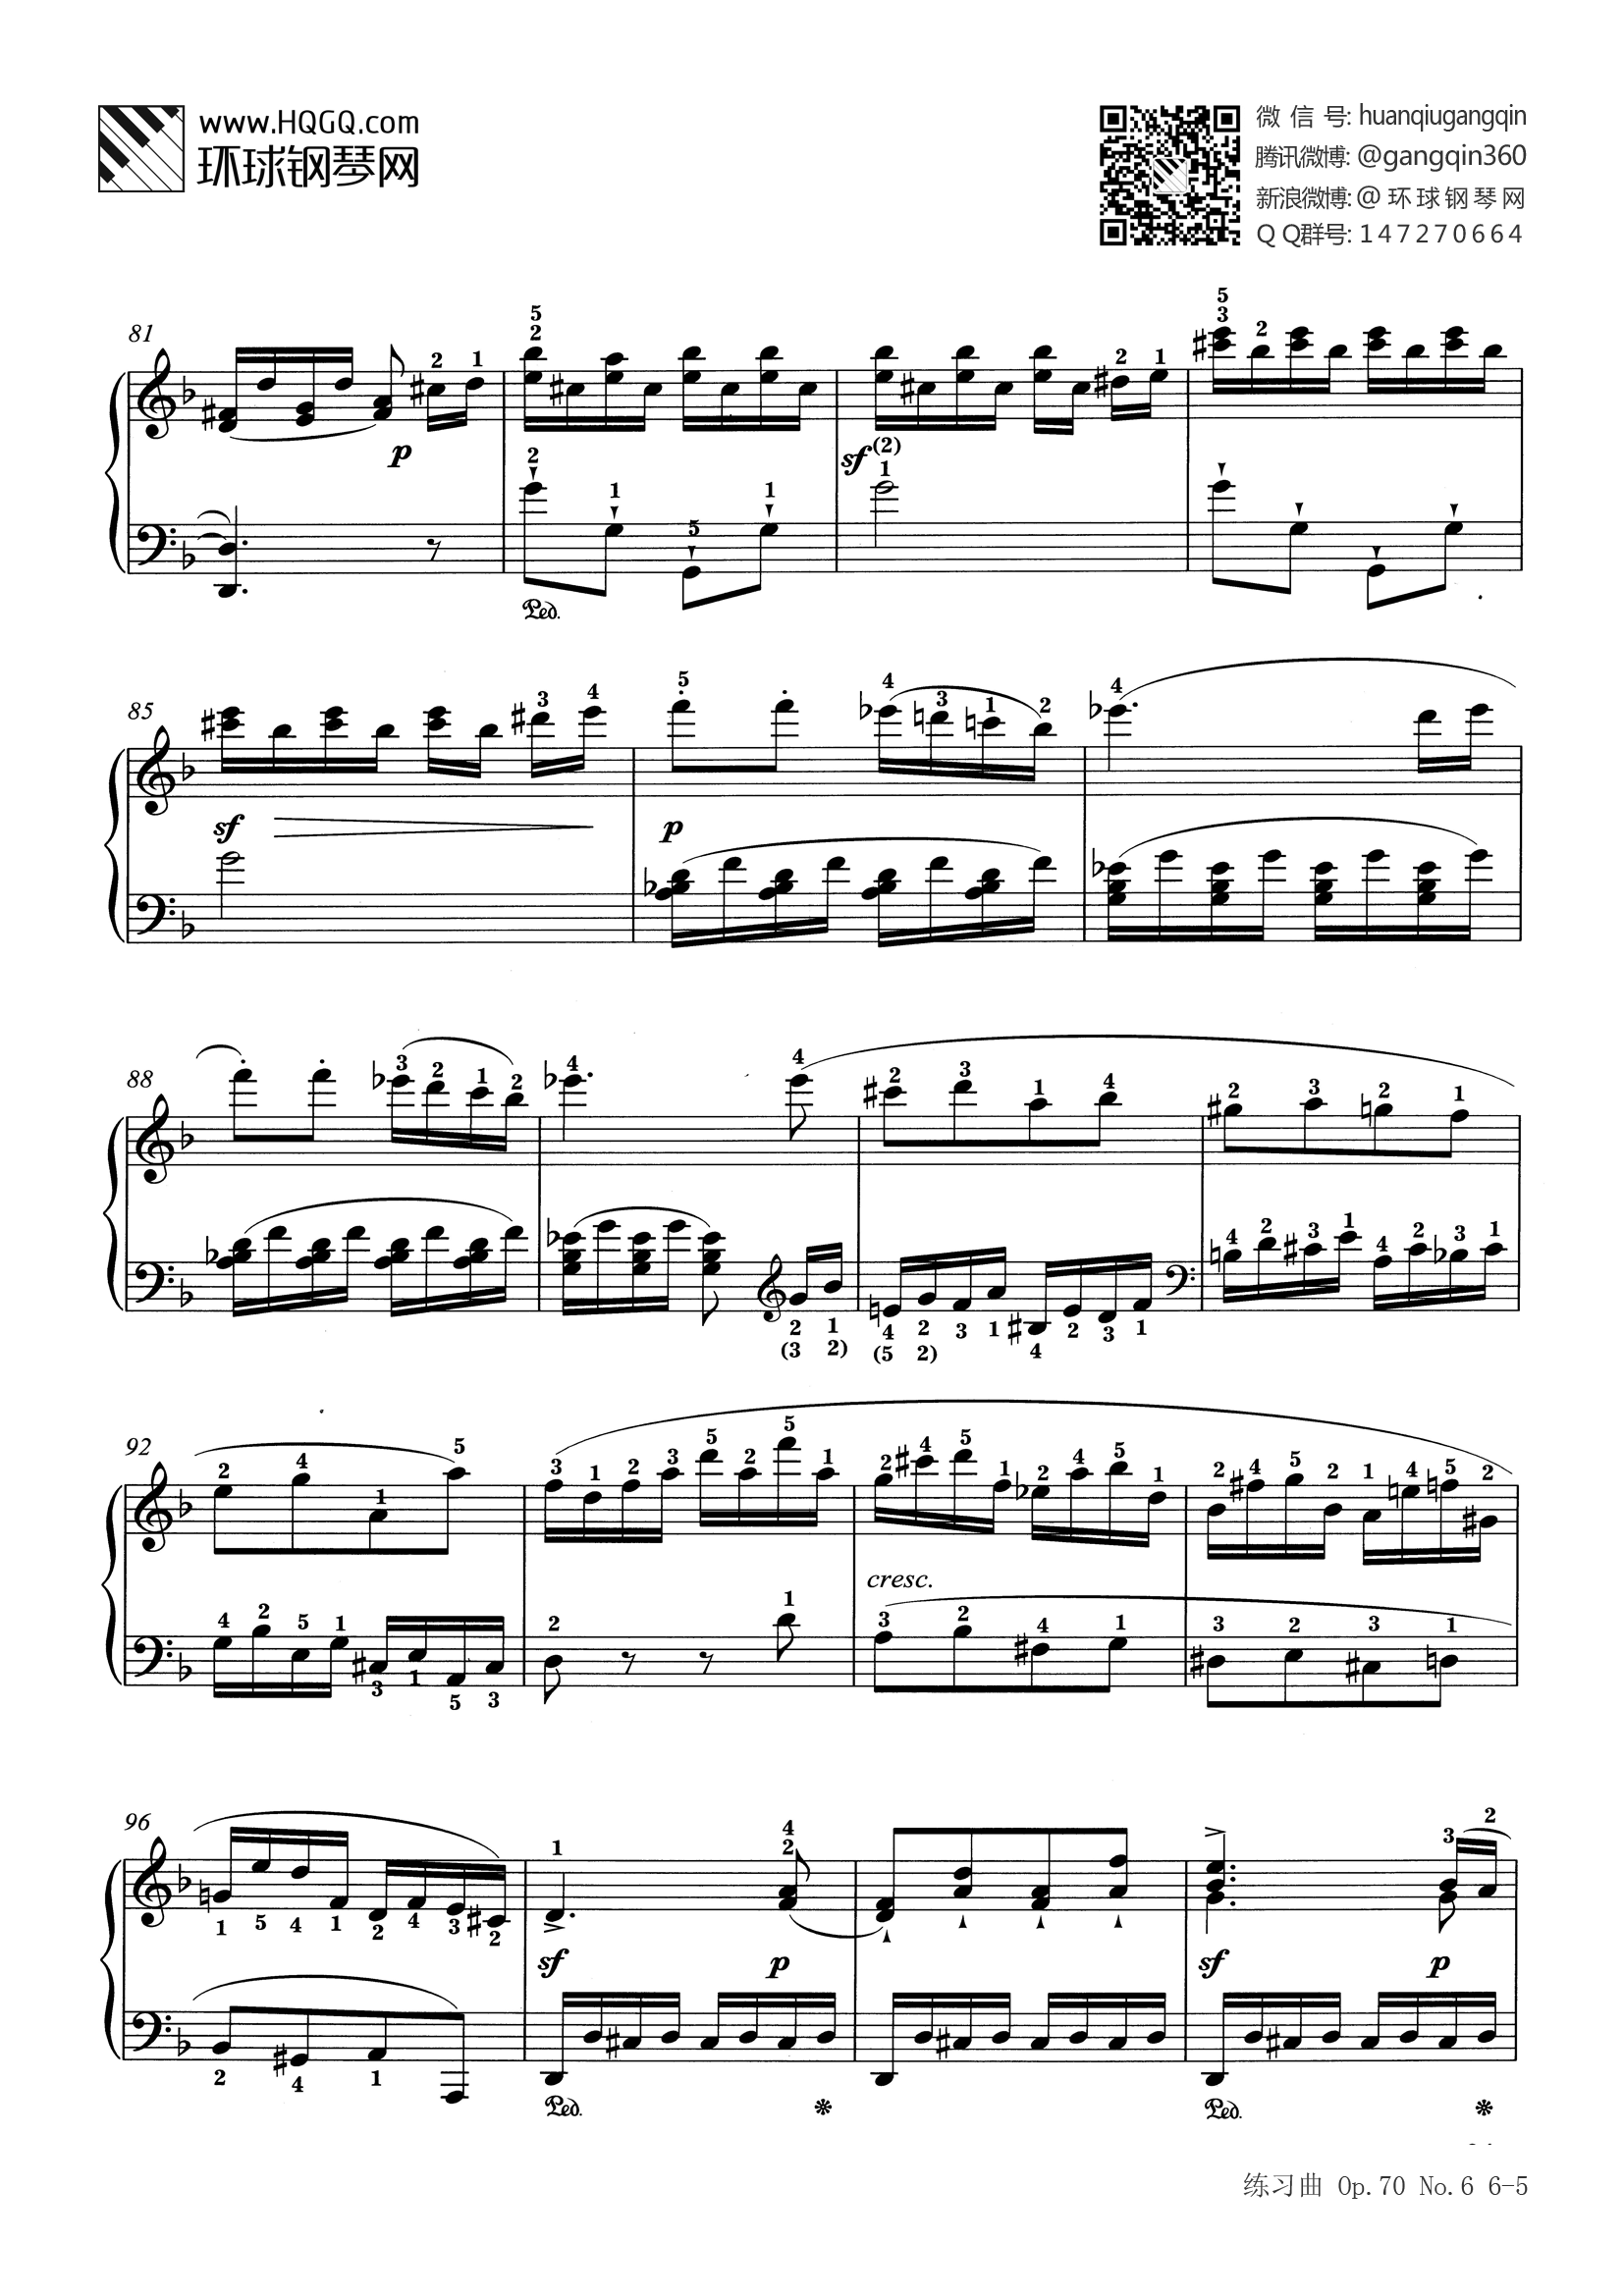 钢琴考级九级曲目谱子图片